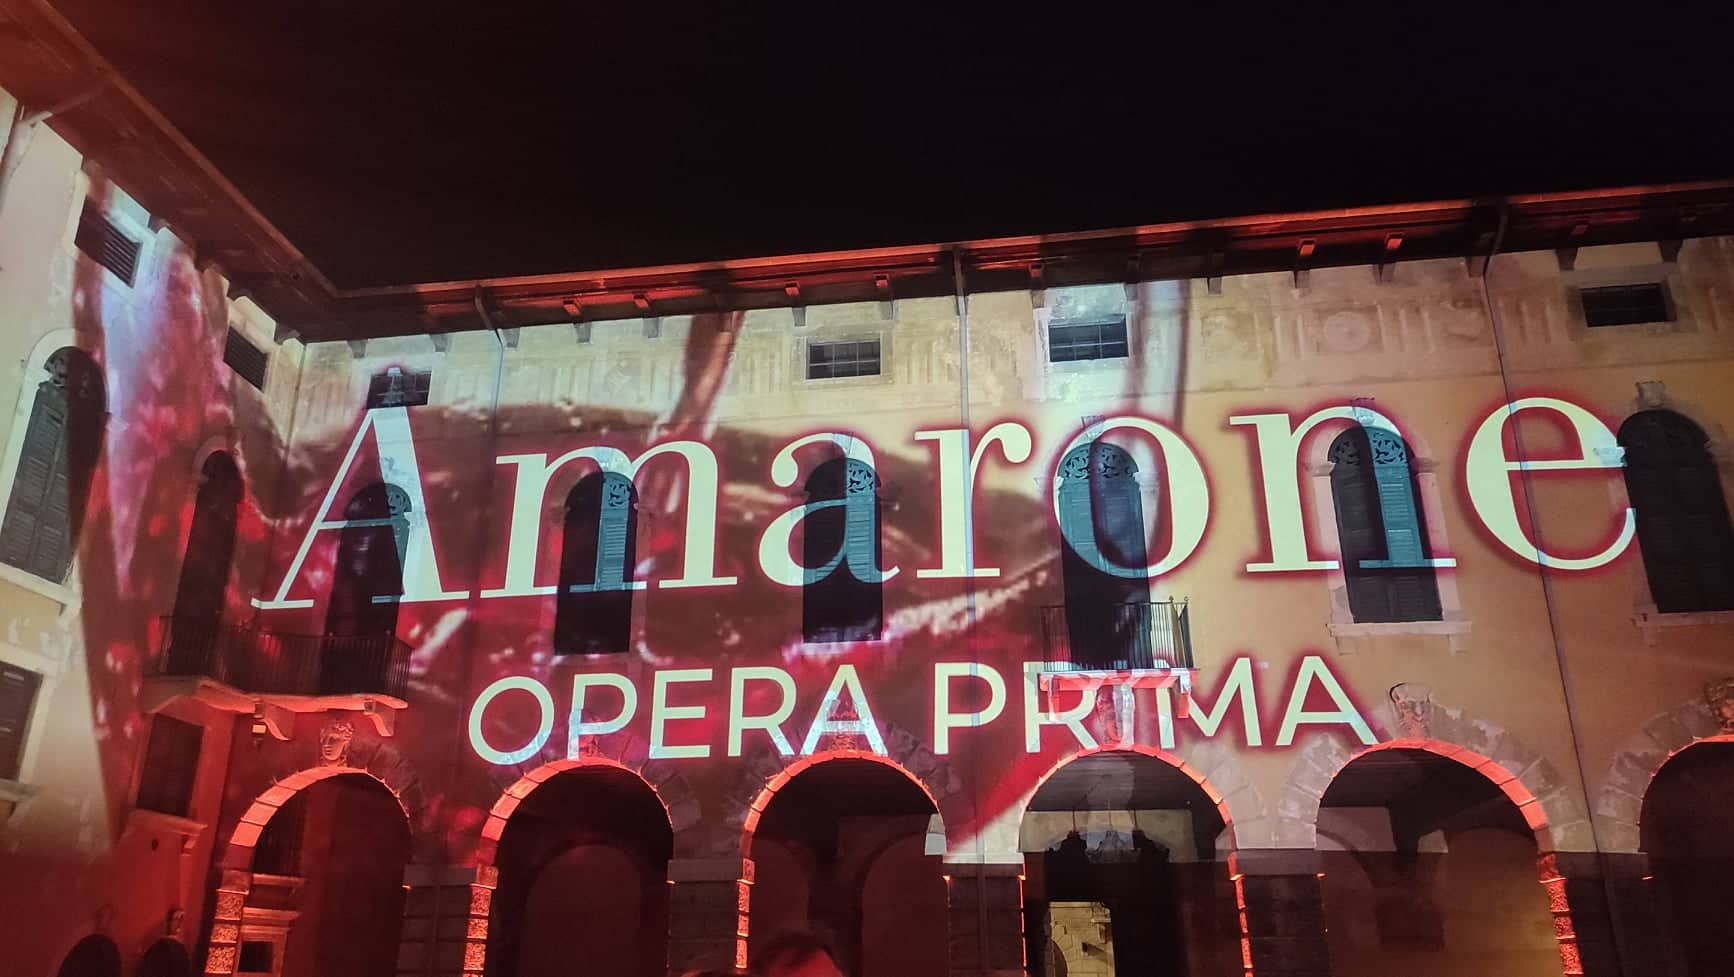 Amarone Opera Prima, dal 4 al 5 febbraio col millesimo 2018 in degustazione